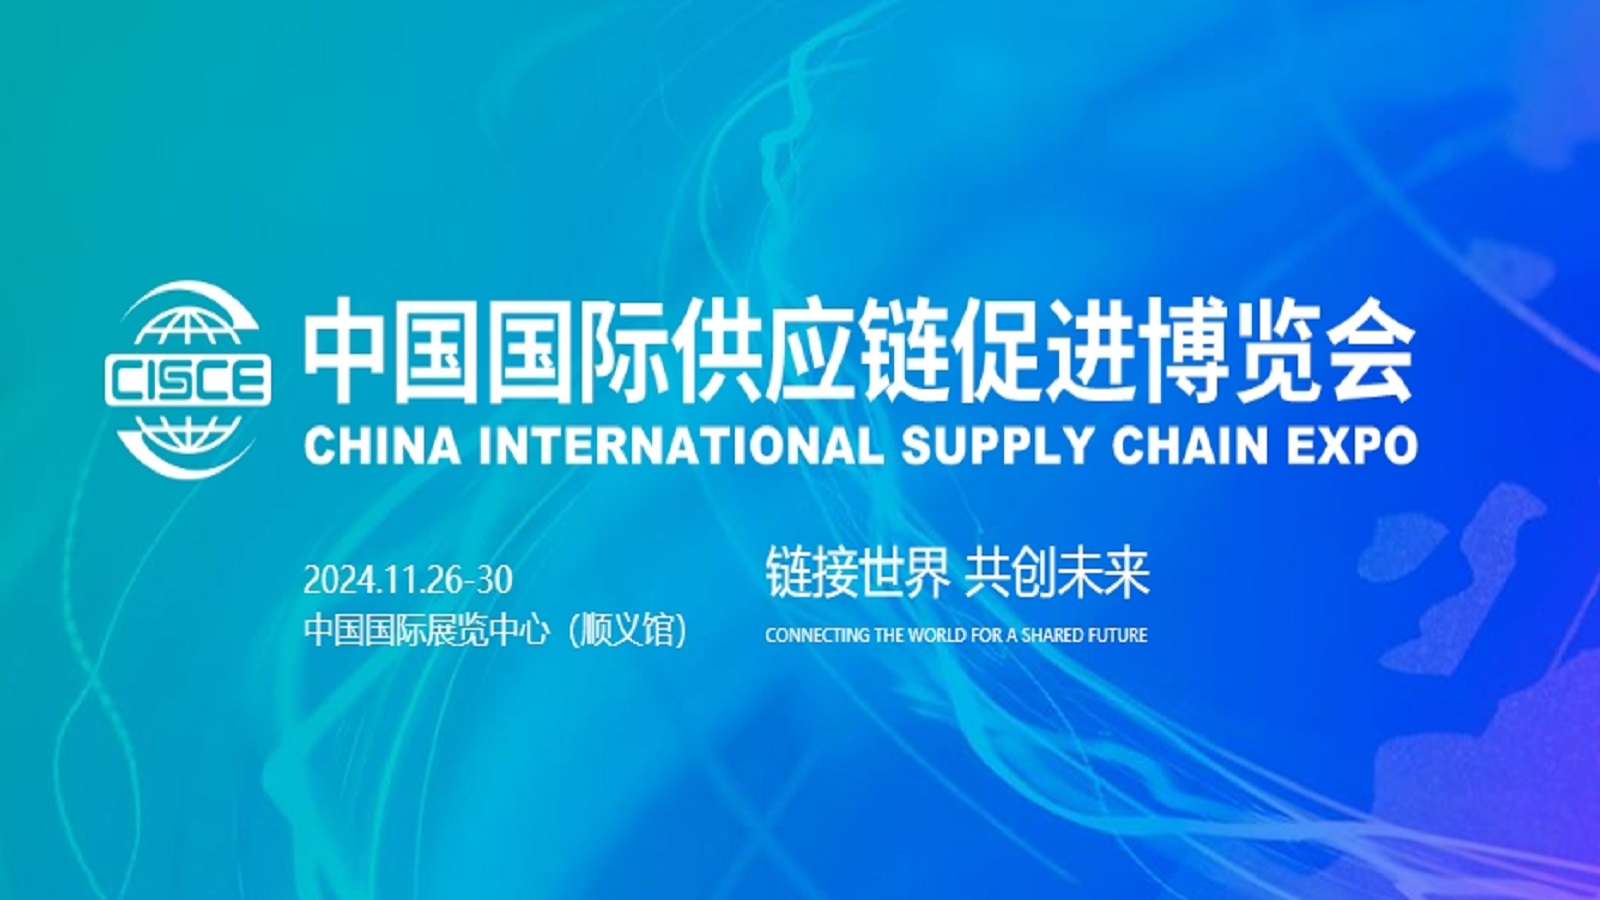 中国国际供应链促进博览会-北京链博会 CISCE